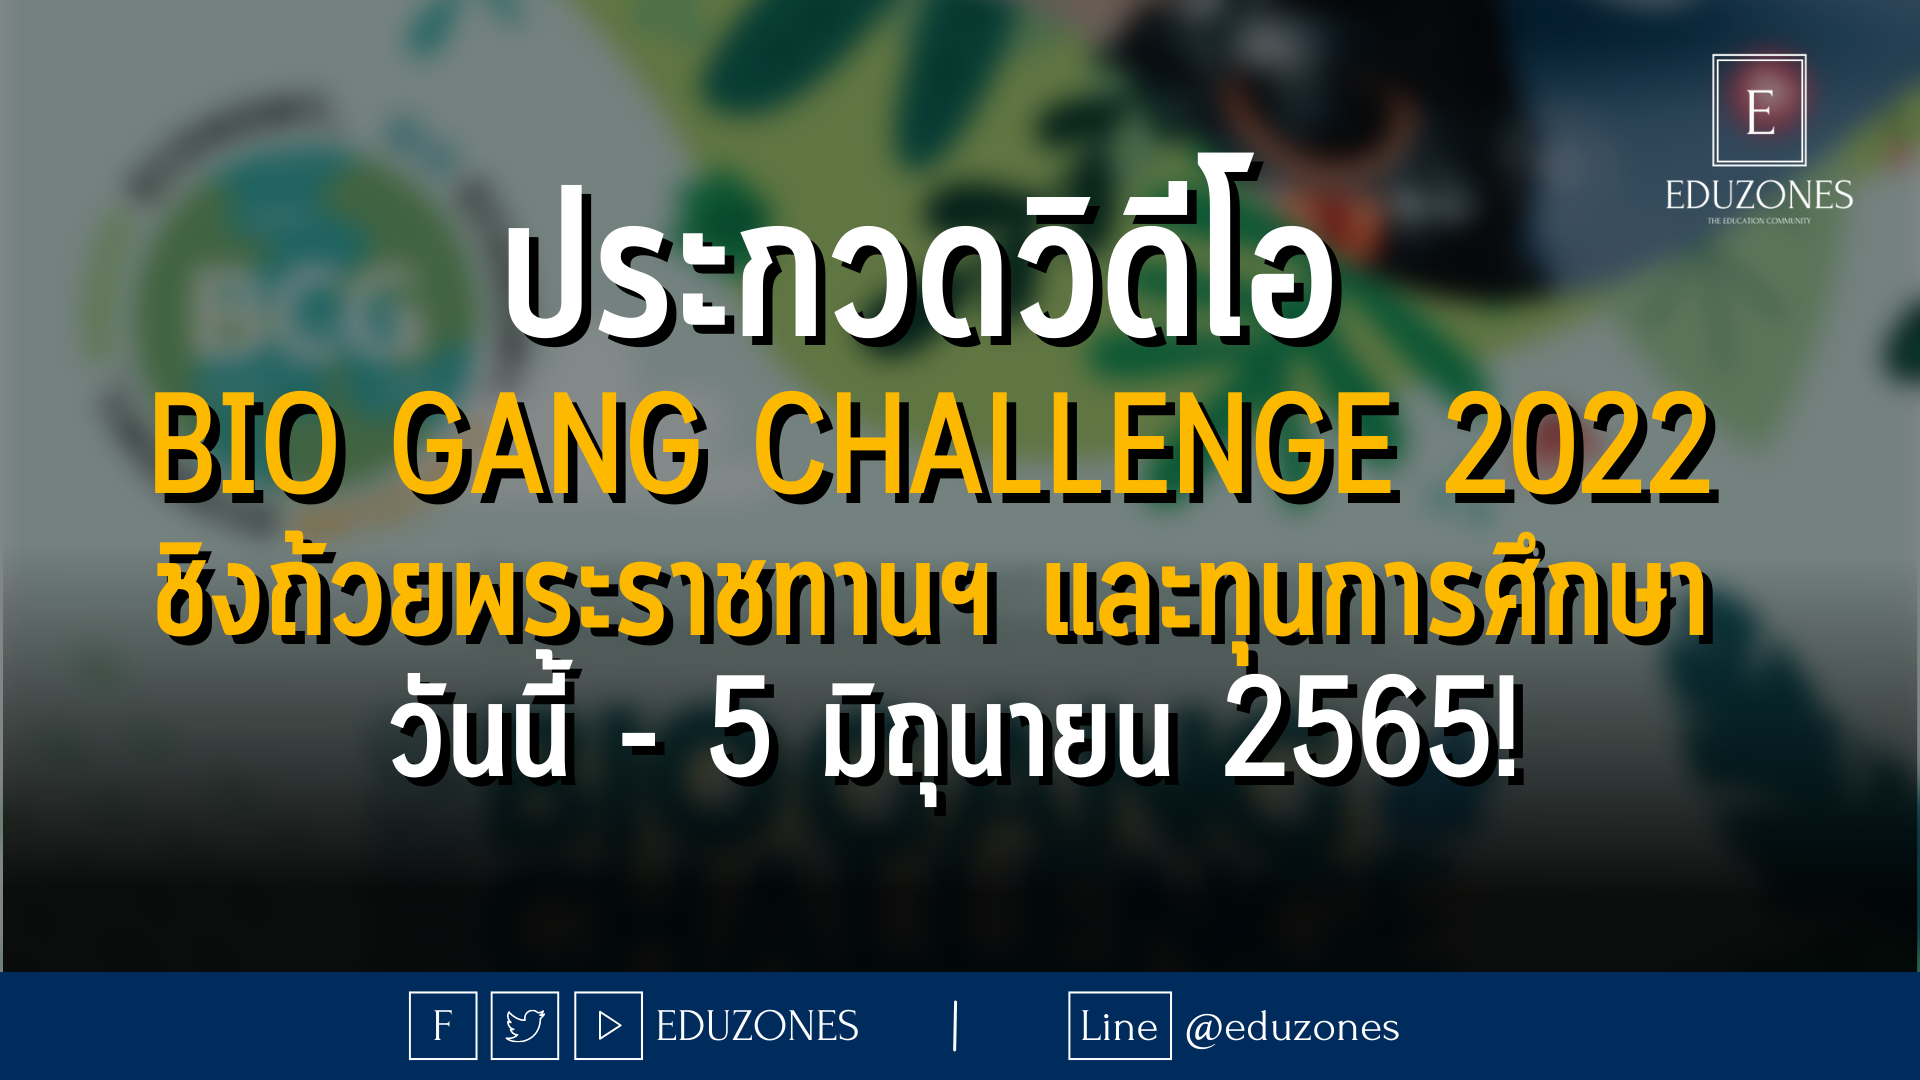 ประกวดวิดีโอ BIO GANG Challenge 2022 ชิงถ้วยพระราชทานฯ และทุนการศึกษา วันนี้ - 5 มิถุนายน 2565!